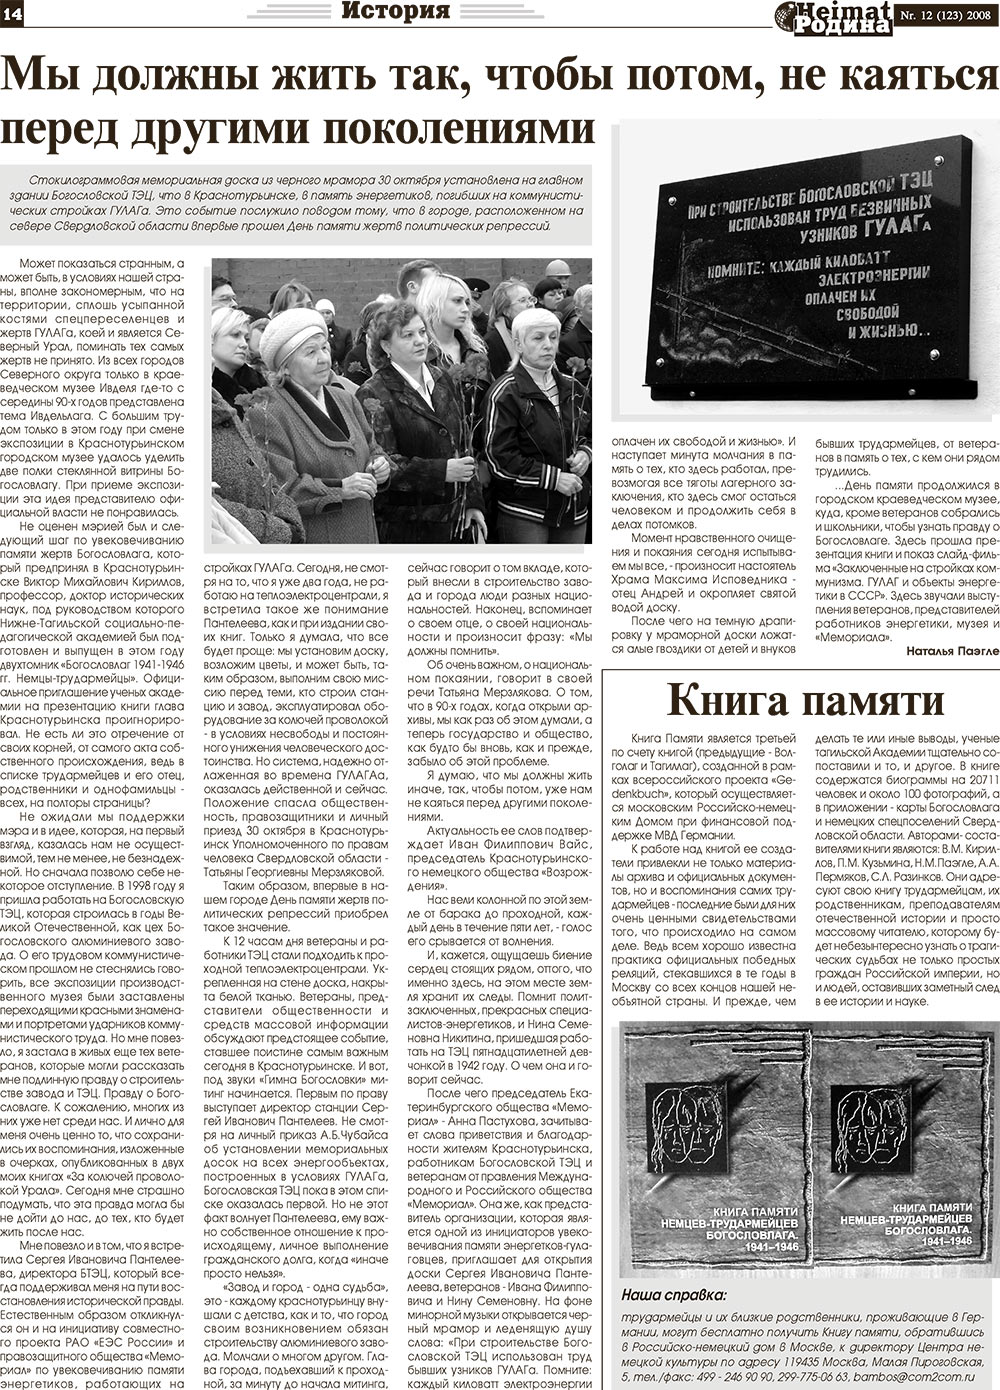 Heimat-Родина (газета). 2008 год, номер 12, стр. 14